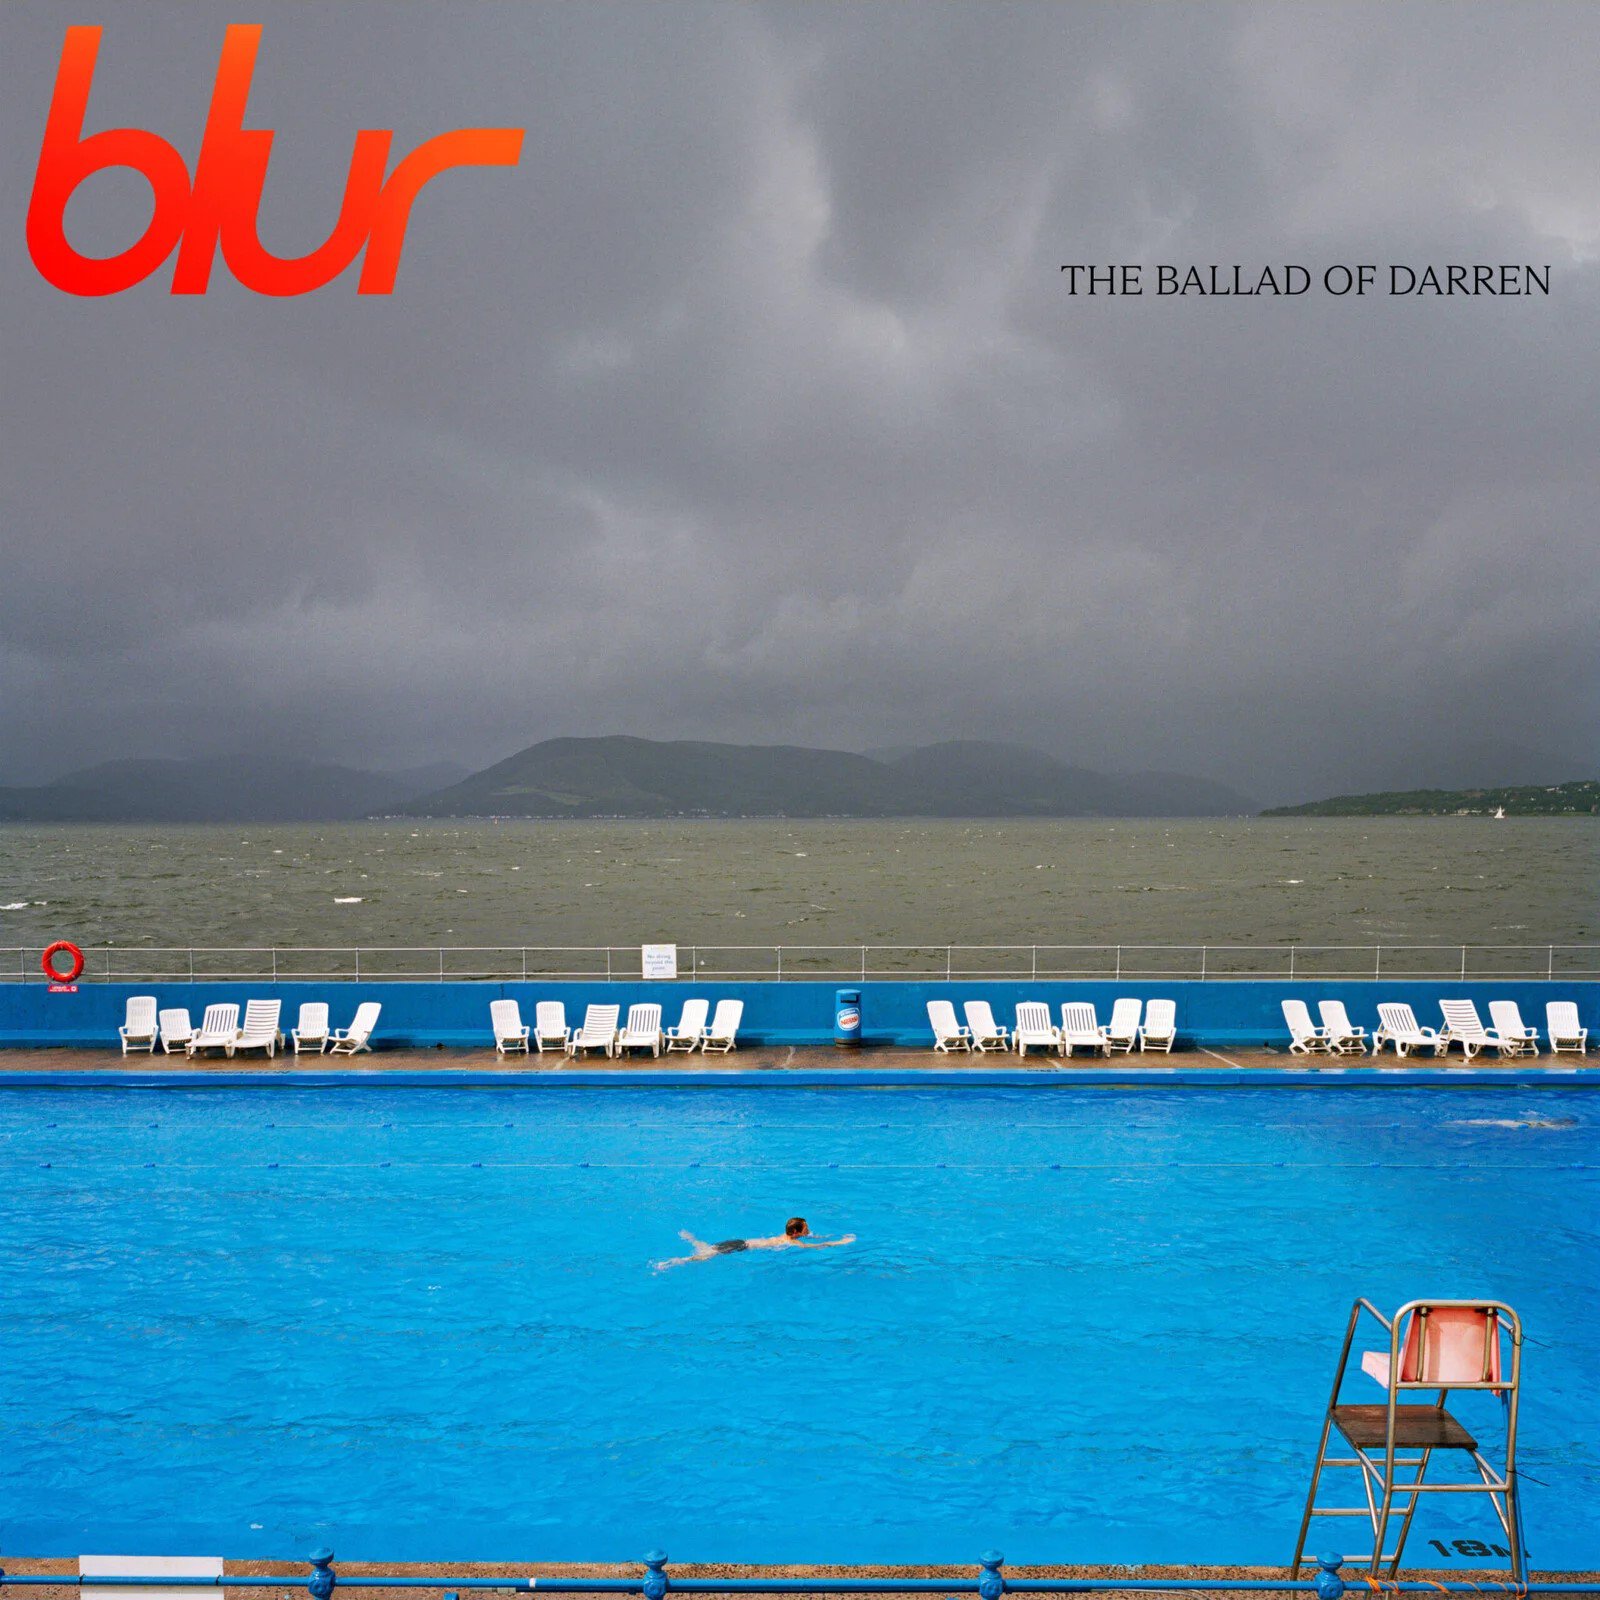 Blur – "The Ballad of Darren", wyd. Parlophone